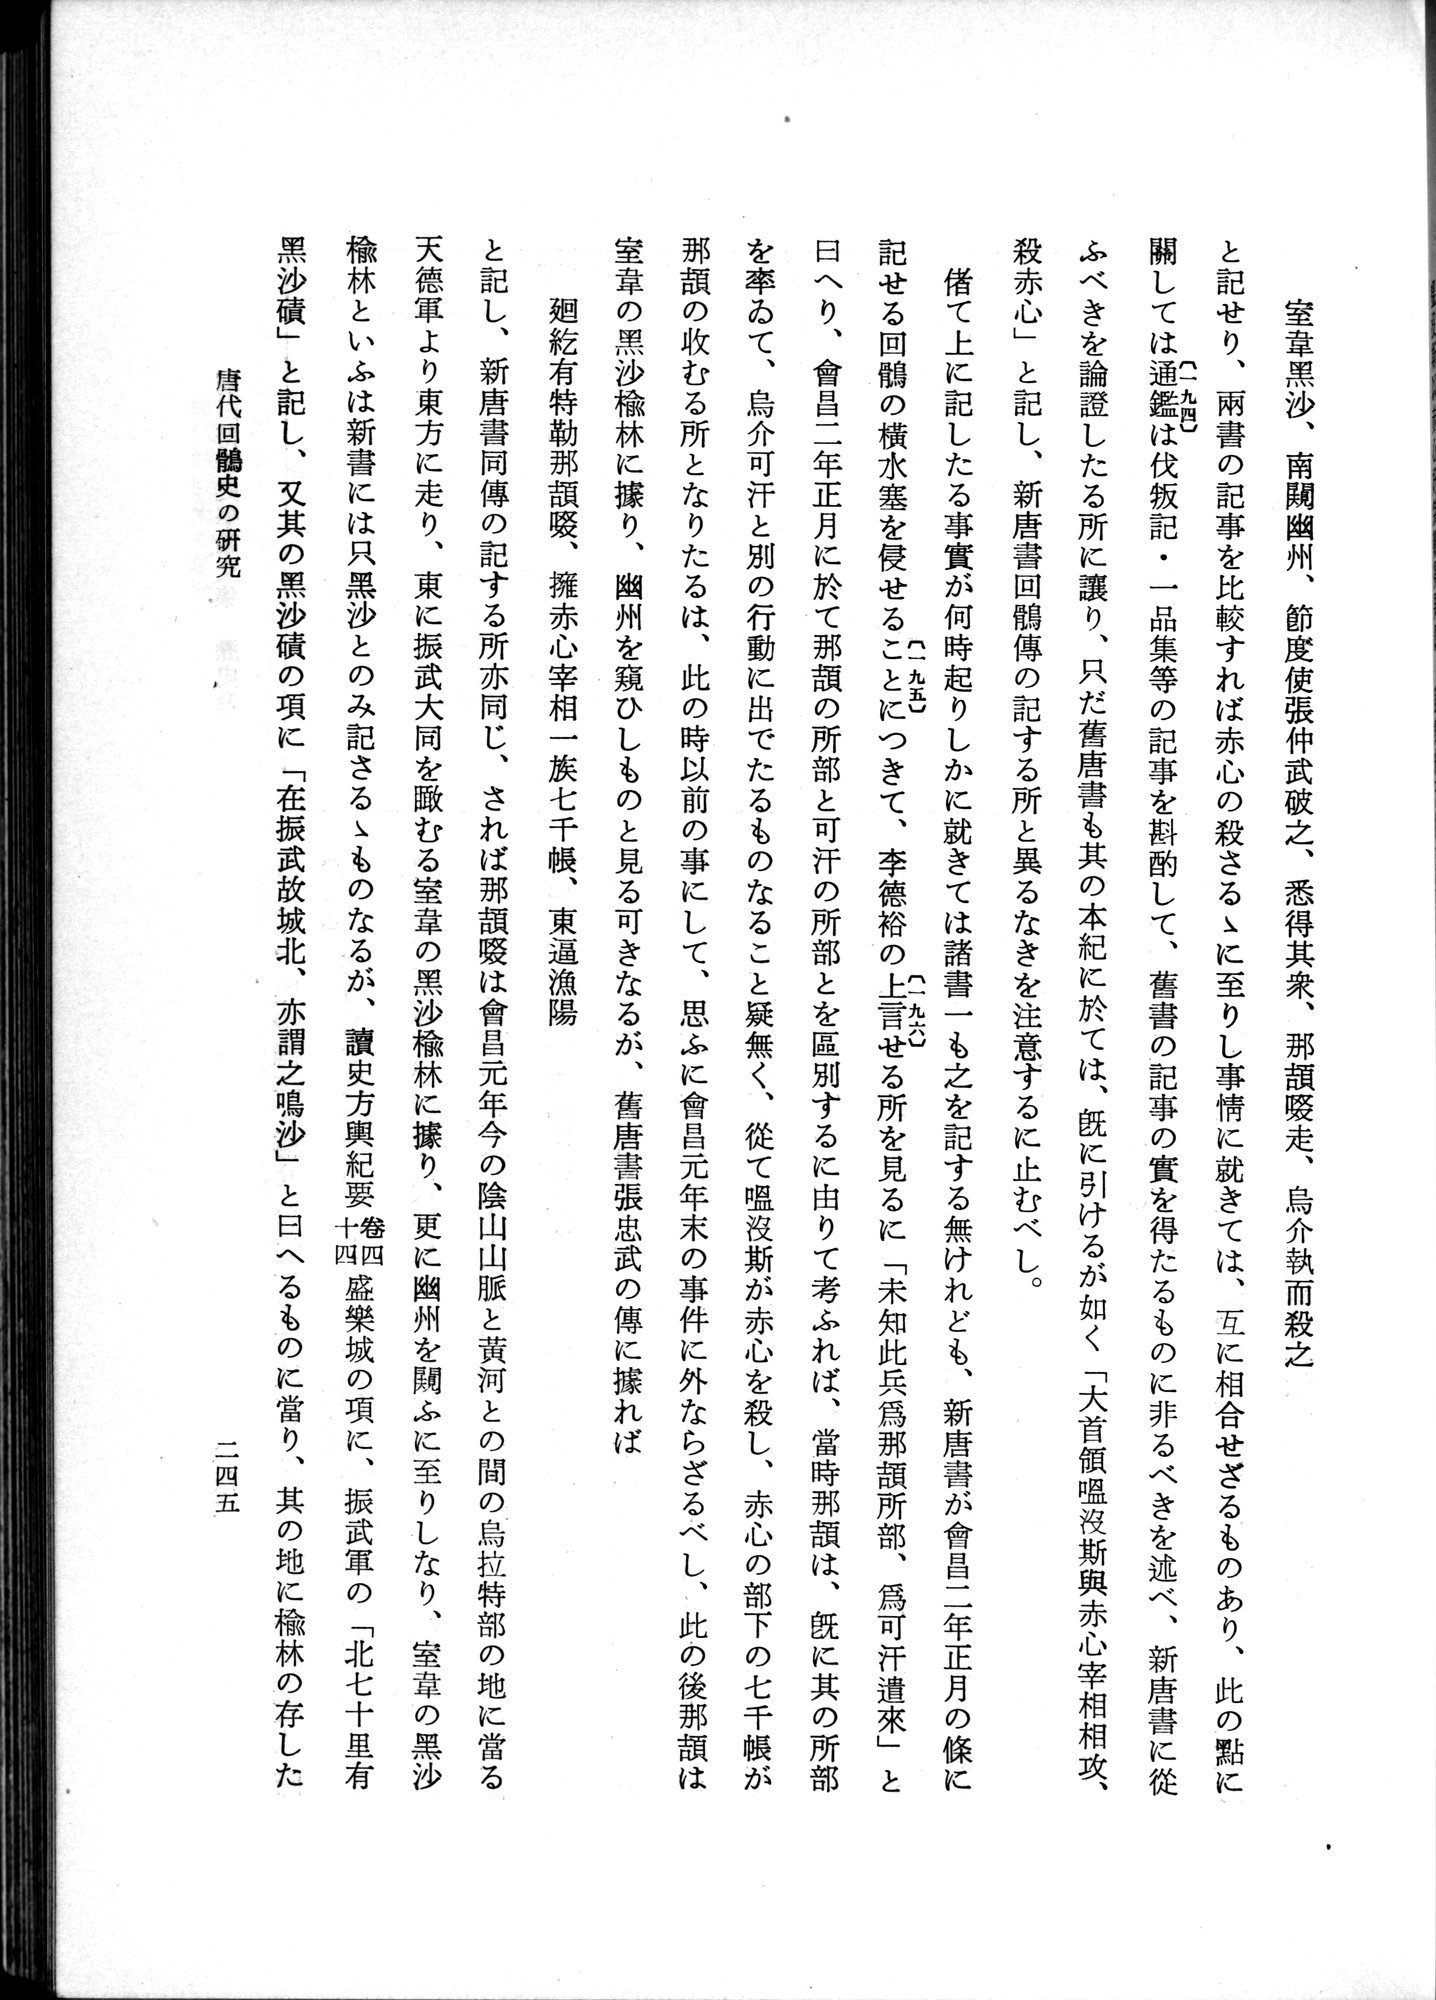 羽田博士史学論文集 : vol.1 / Page 283 (Grayscale High Resolution Image)